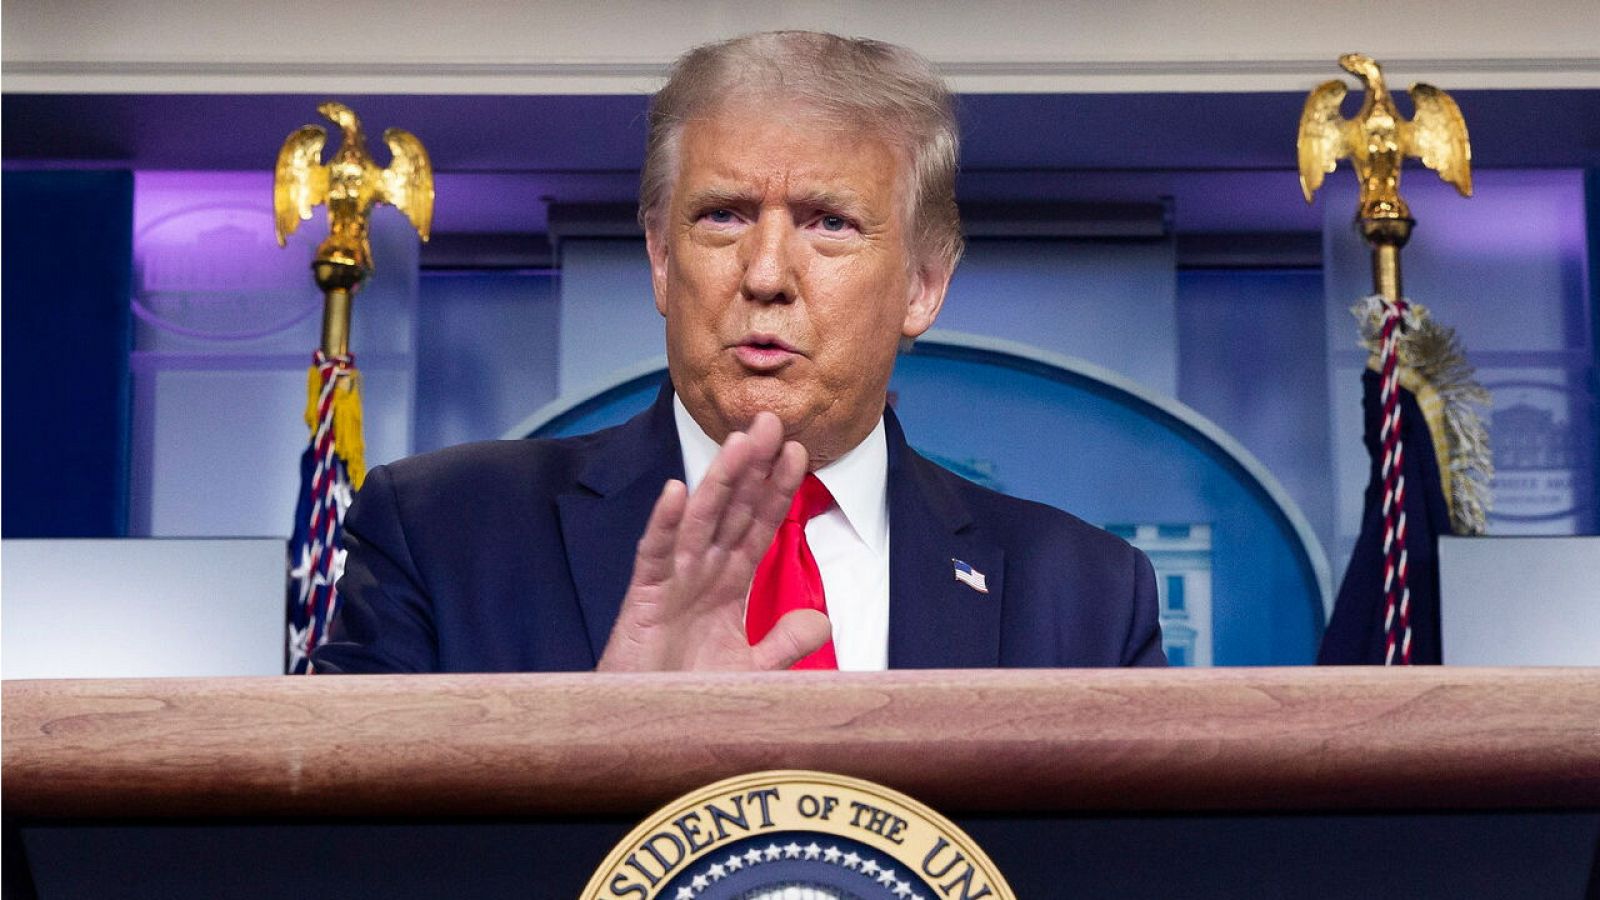 El presidente de los Estados Unidos, Donald Trump, celebra una conferencia de prensa en la sala de prensa en la Casa Blanca en Washington, DC, EE. UU.